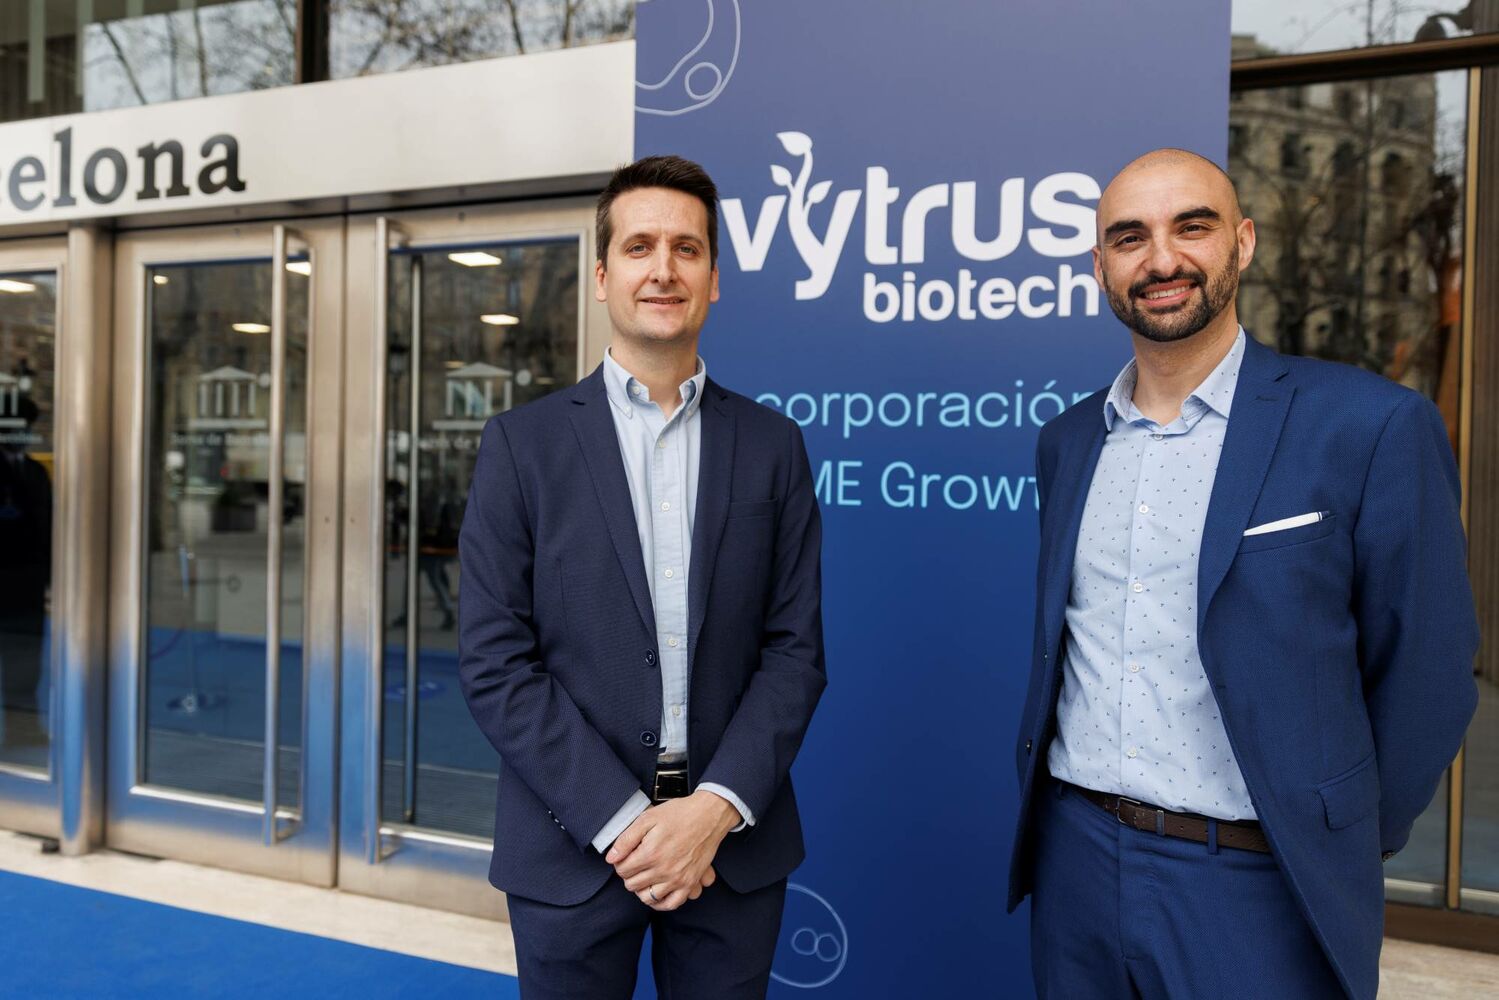 Vytrus, una inversión en innovación, biotecnología, eficiencia y sostenibilidad